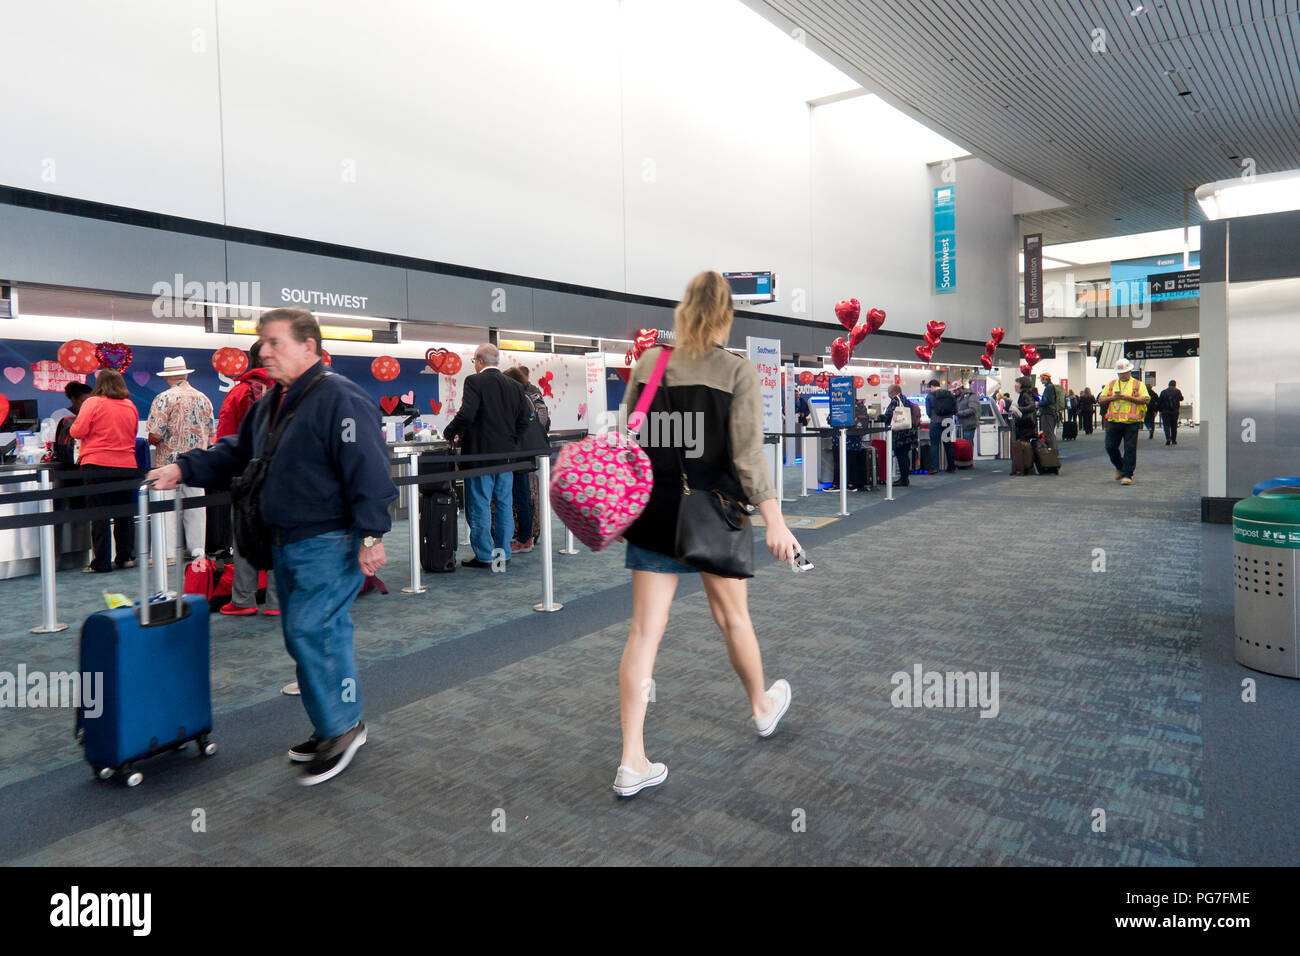 Los mostradores de Southwest Airlines en el Aeropuerto Internacional de San Francisco - San Francisco, California, EE.UU. Foto de stock